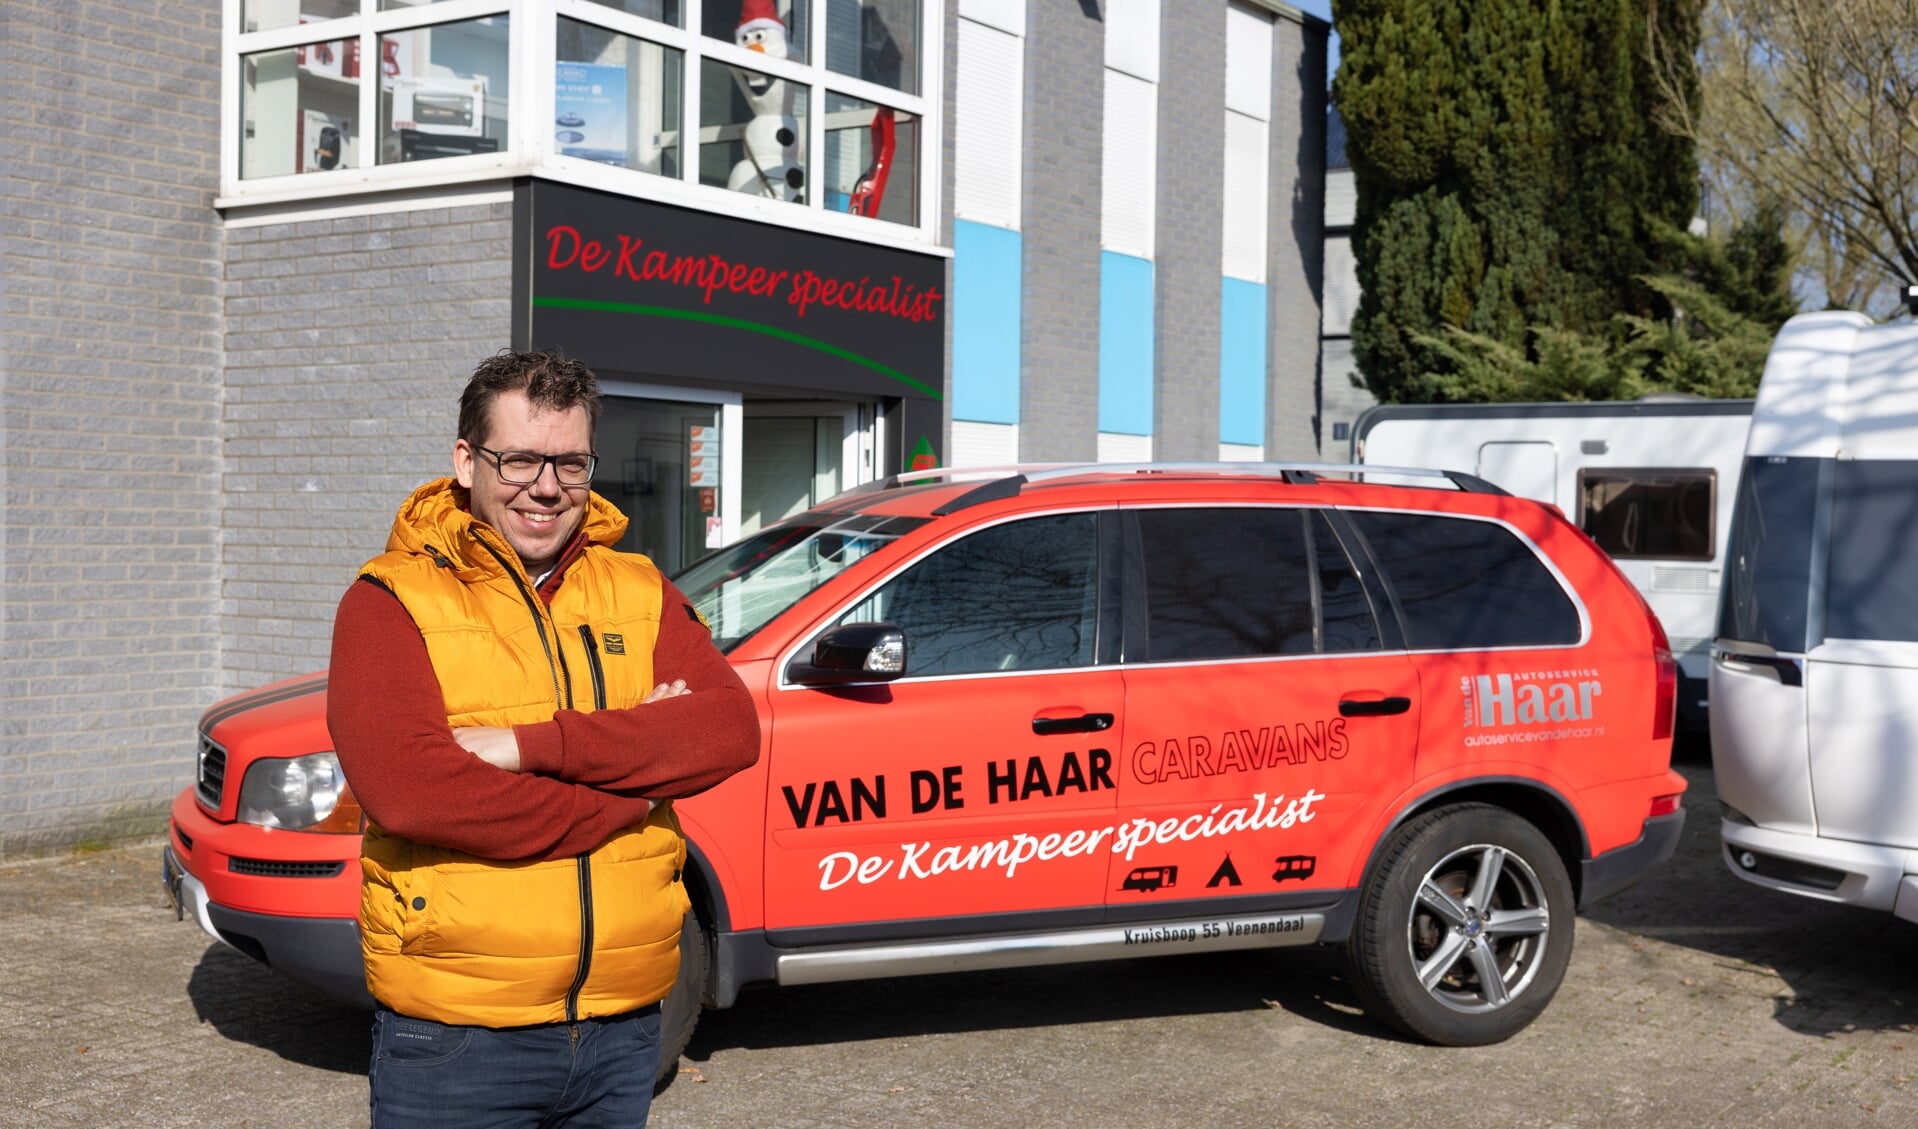 Frans van de Haar voor het pand waar vanaf 1 april De Kampeerspecialist is gevestigd.